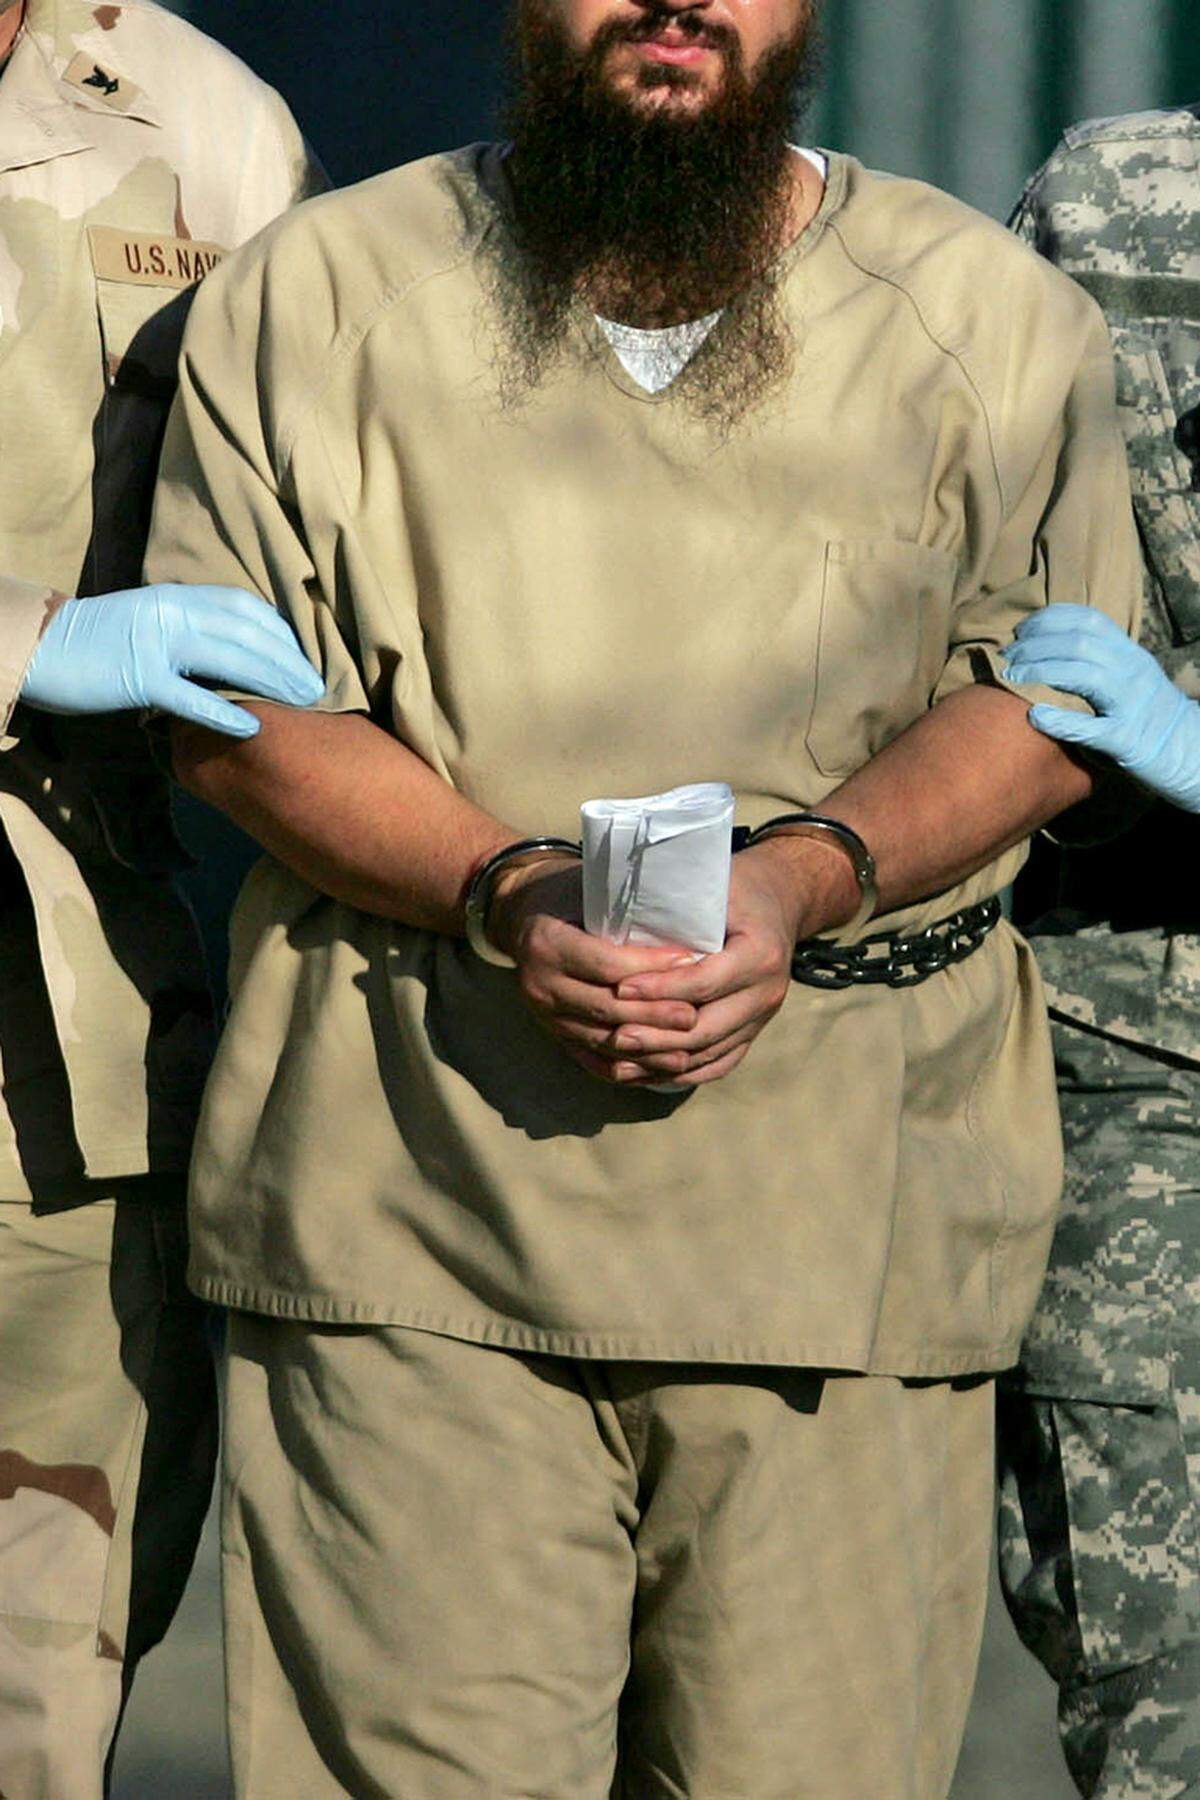 Erst 2006 erklärte der Supreme Court die Aburteilung der Häftlinge vor Militärtribunalen in Guantanamo für verfassungswidrig und stellte die Häftlinge unter den Schutz der Genfer Konvention. Am 12. Juni 2008 entschied der Supreme Court, dass die Gefangenen auch Zugang zu US-Zivilgerichten haben müssen.